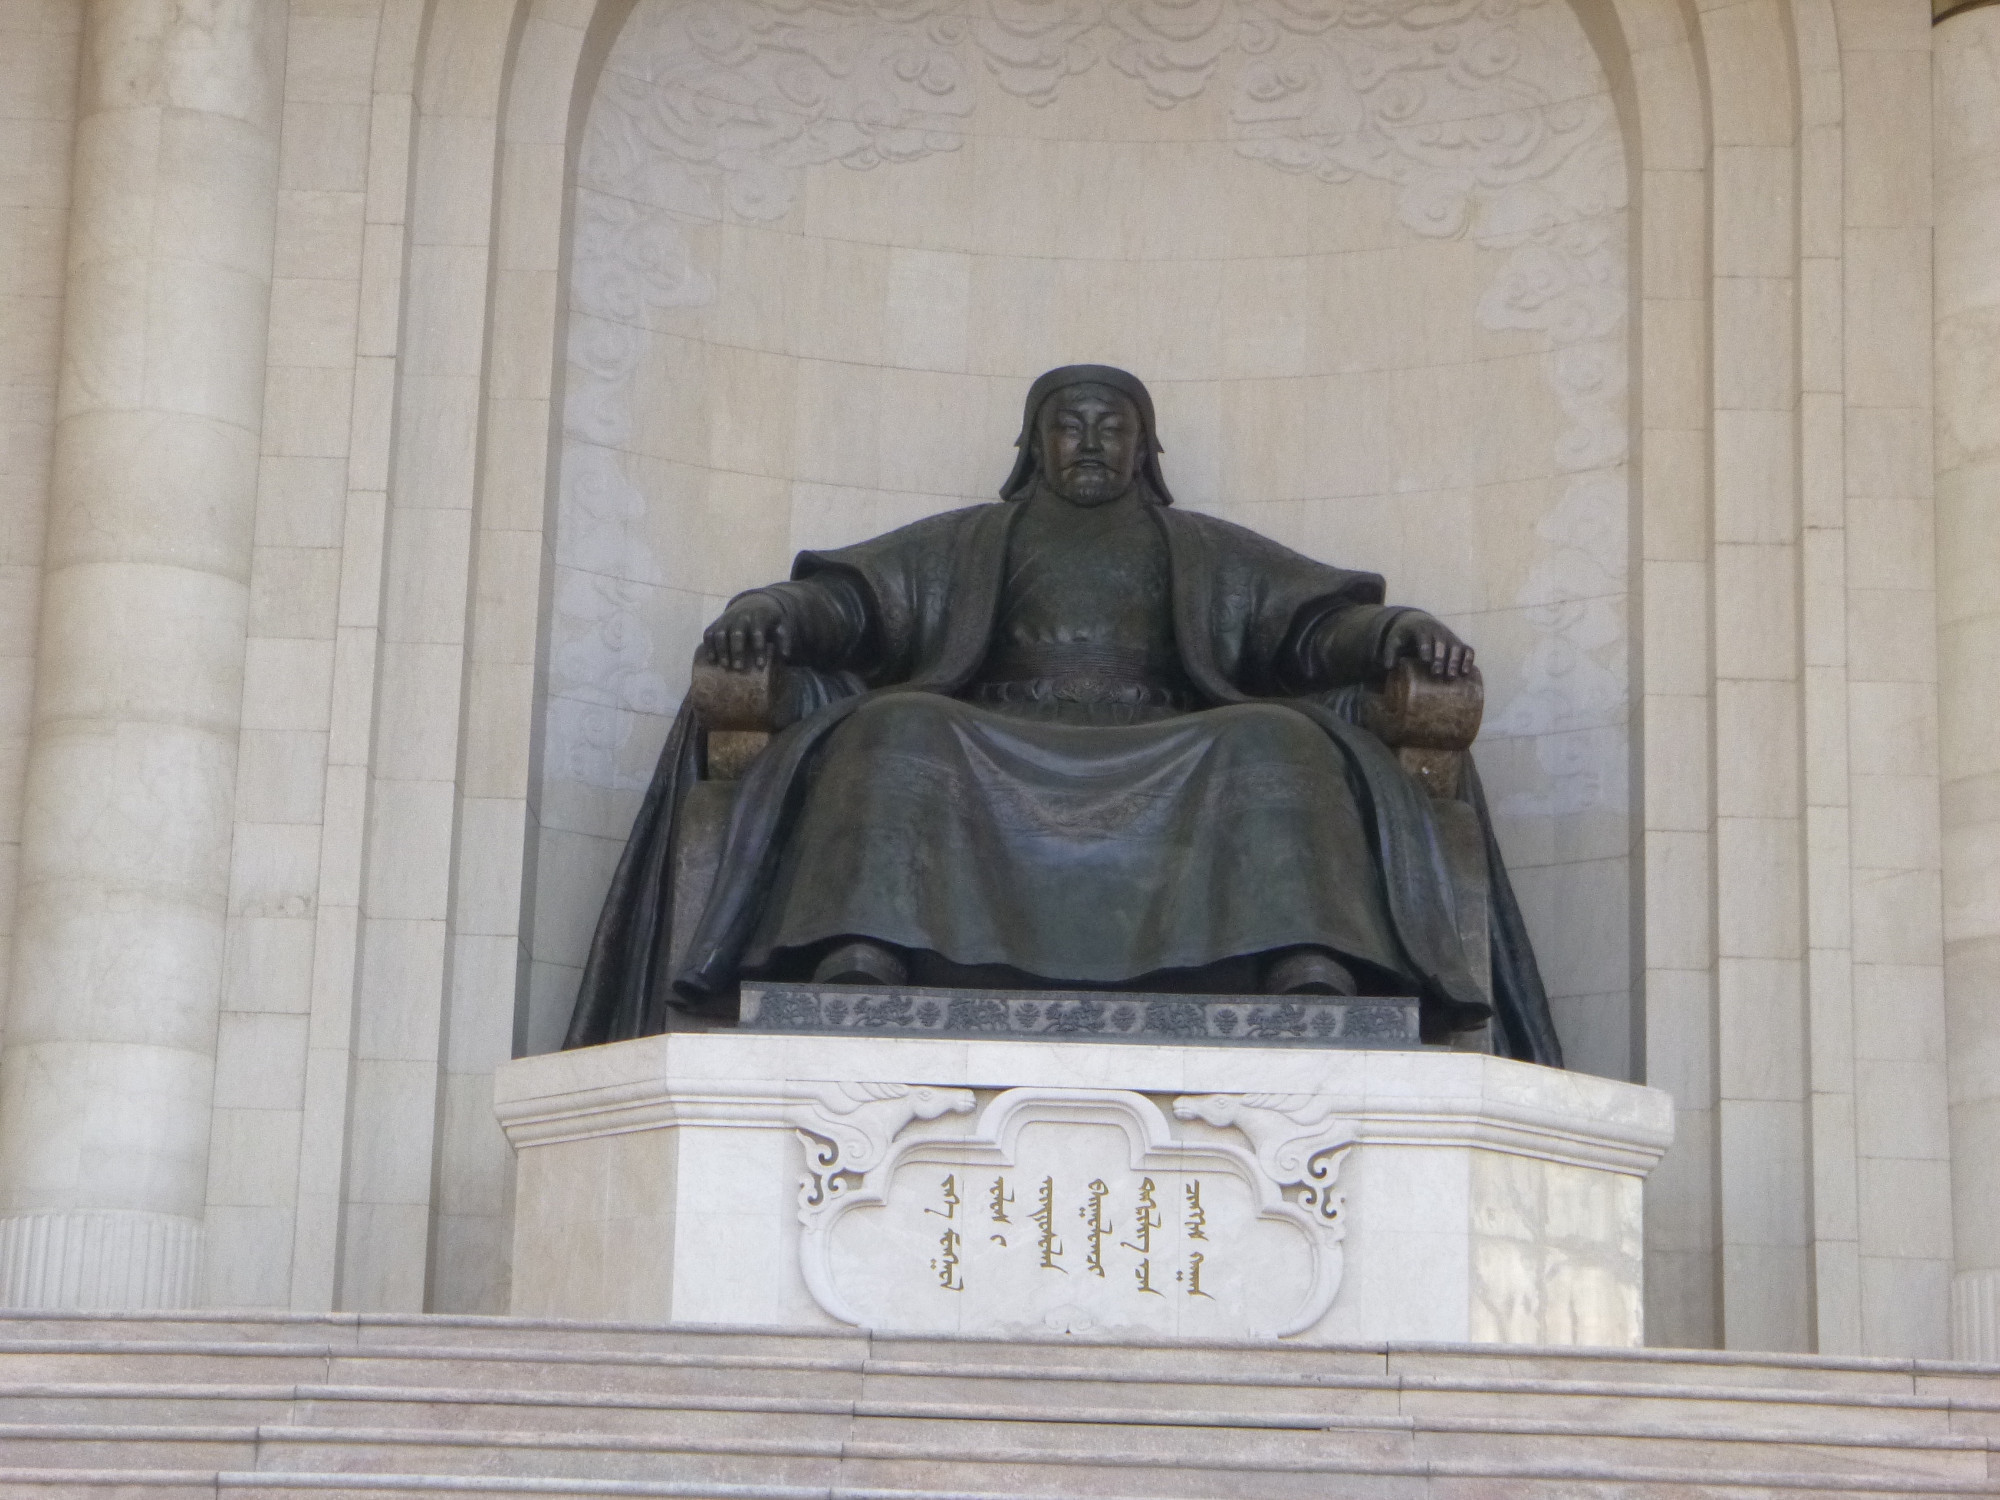 (Genghis) Chinggis Khan Statue